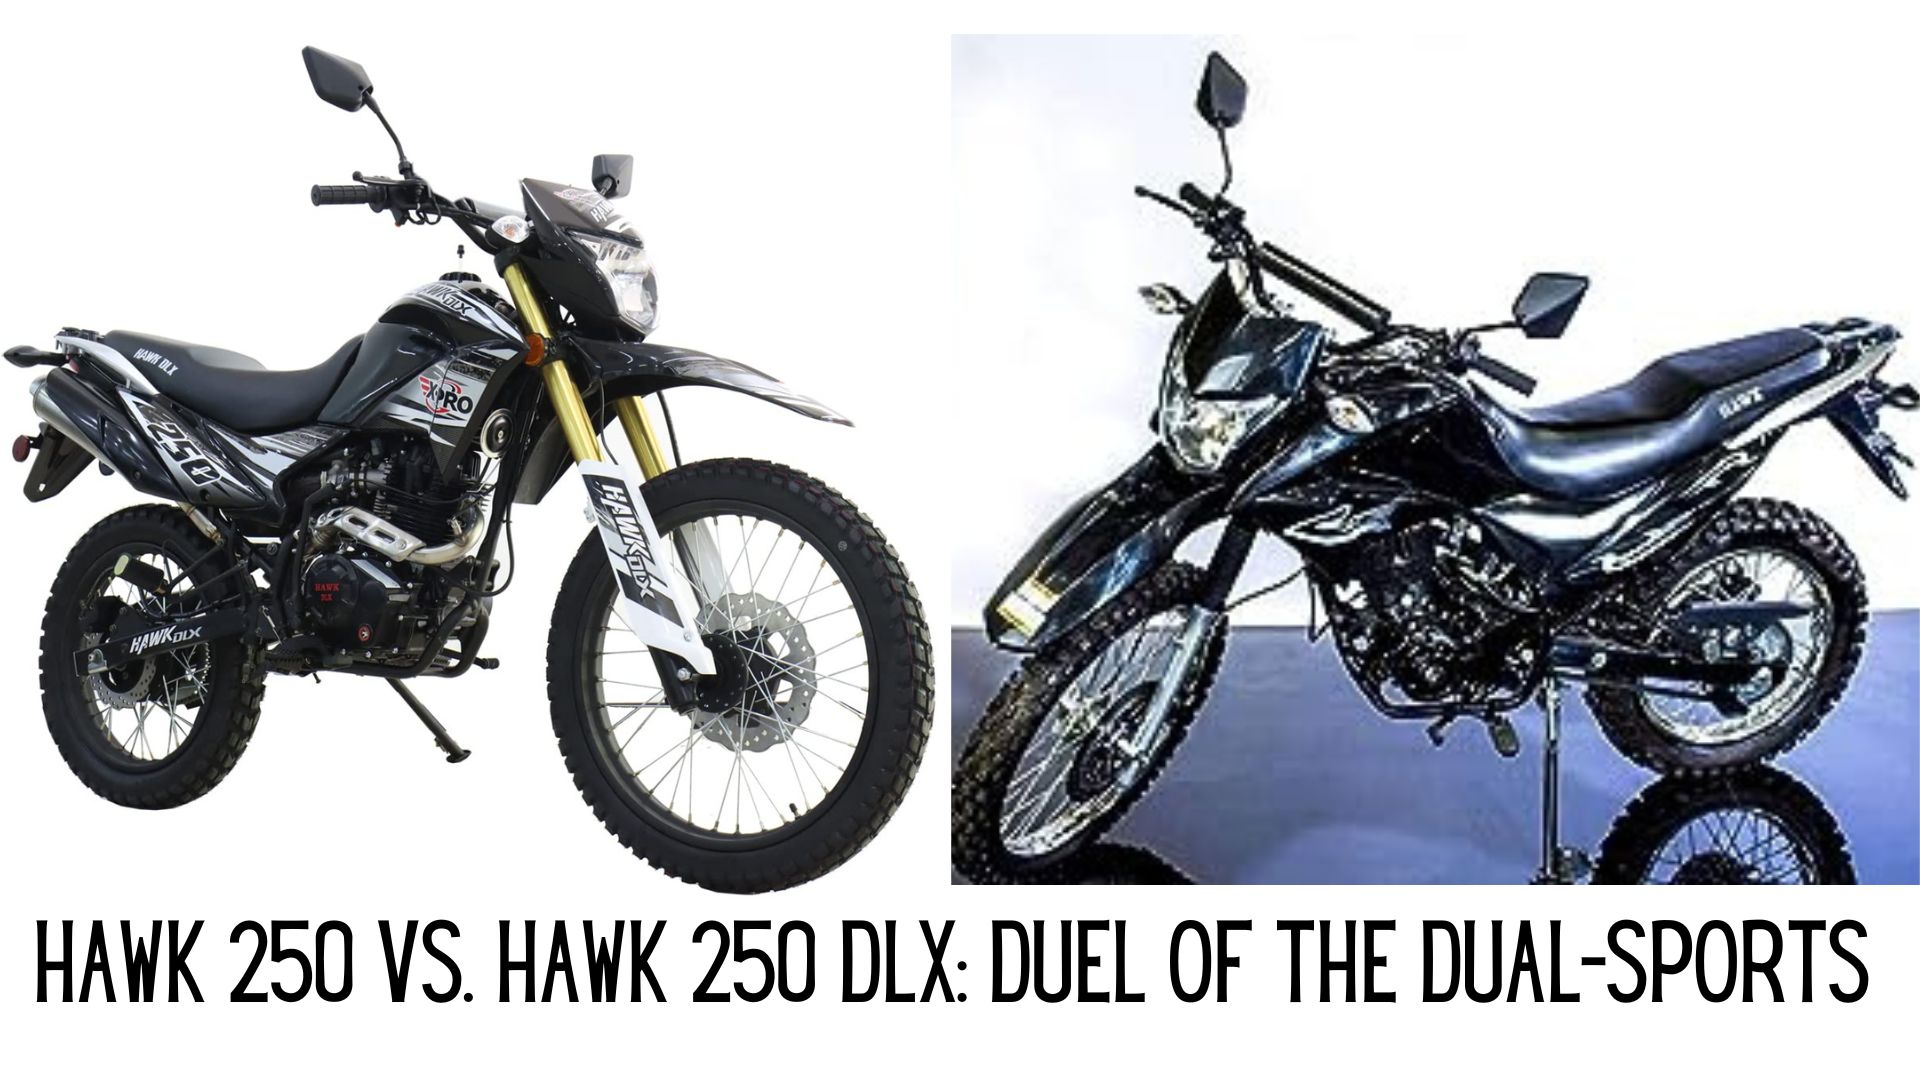 Hawk 250 vs. Hawk 250 DLX: Duel of the Dual-Sports